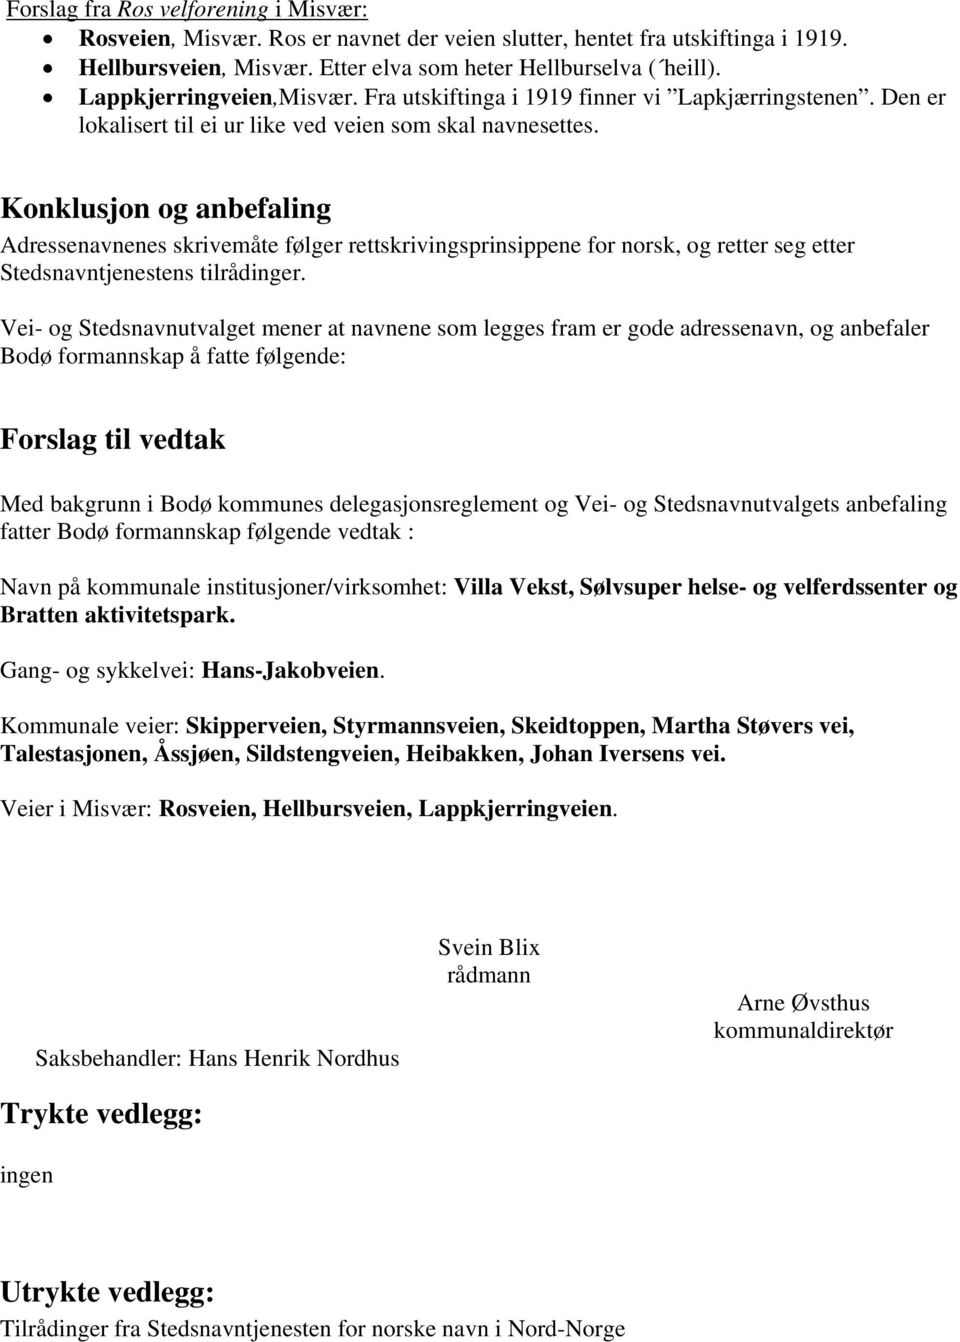 Konklusjon og anbefaling Adressenavnenes skrivemåte følger rettskrivingsprinsippene for norsk, og retter seg etter Stedsnavntjenestens tilrådinger.